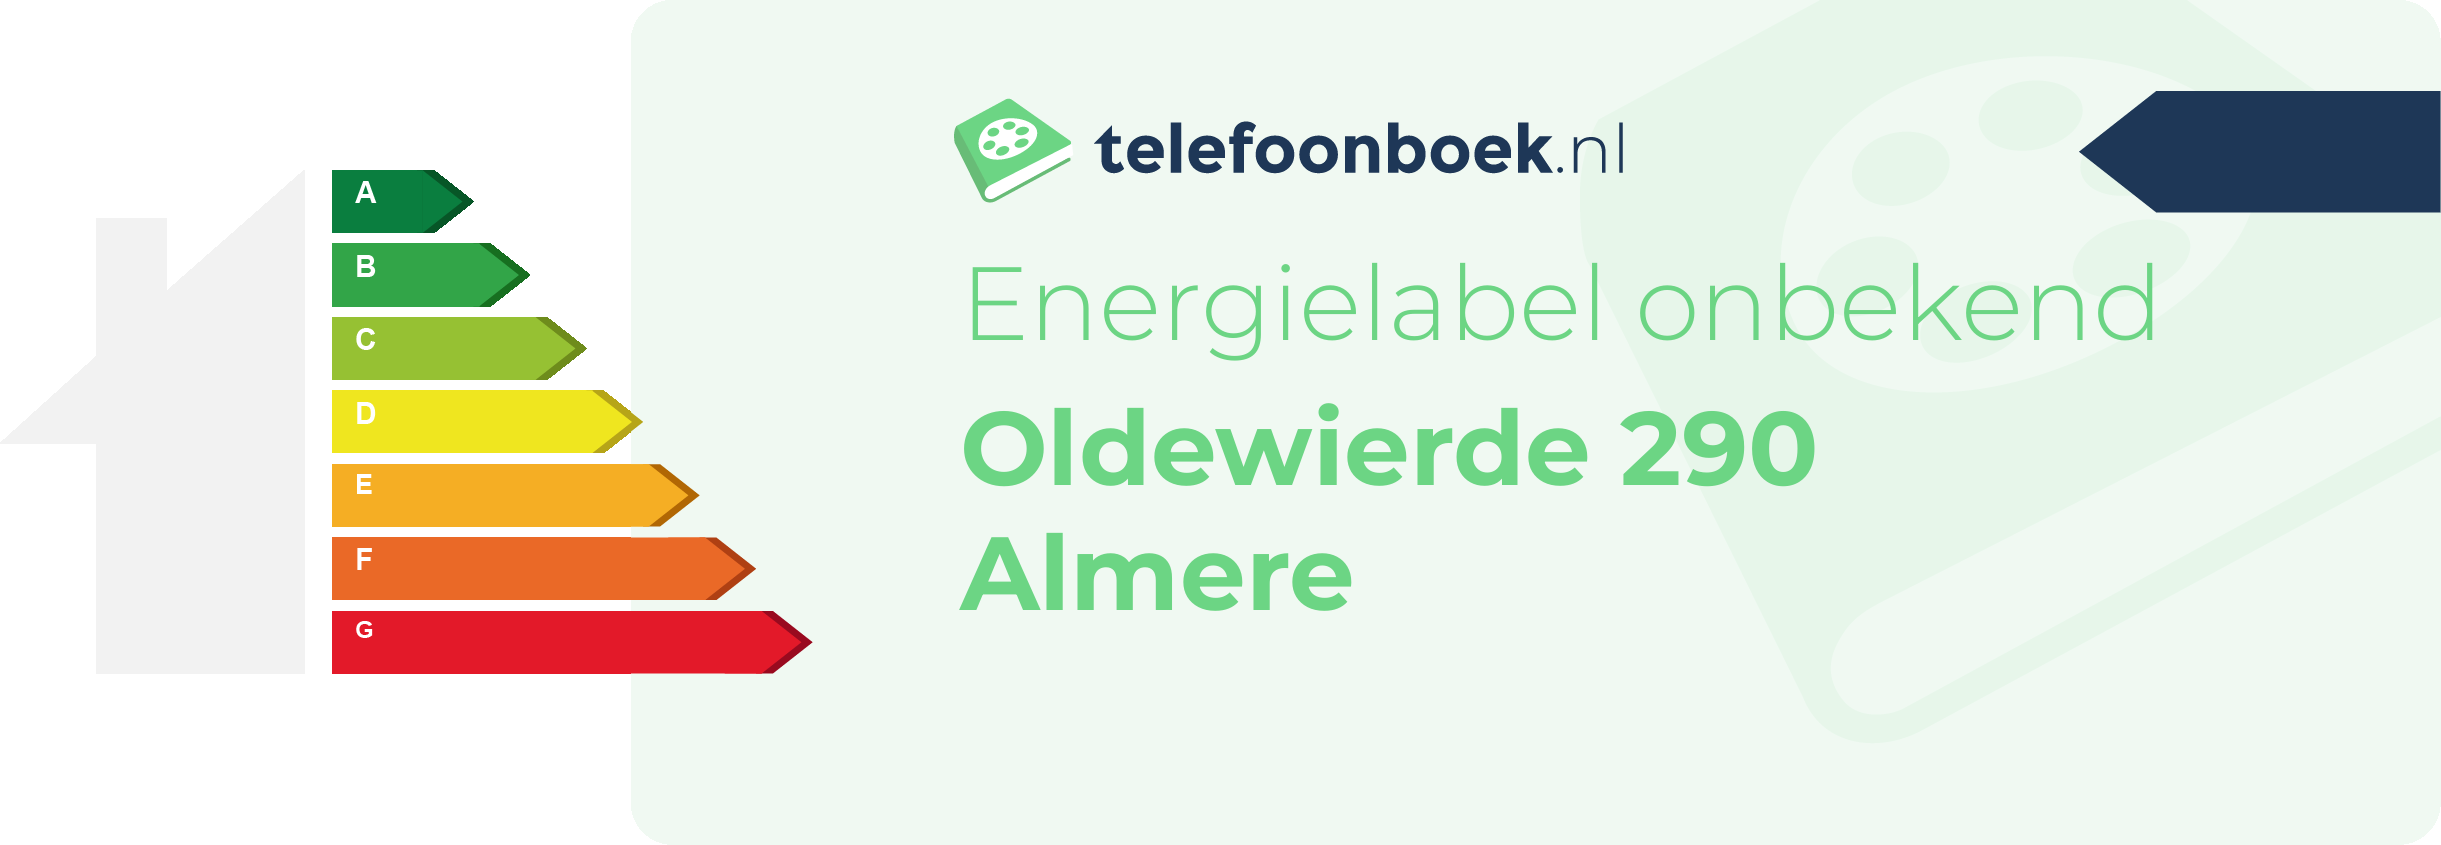 Energielabel Oldewierde 290 Almere